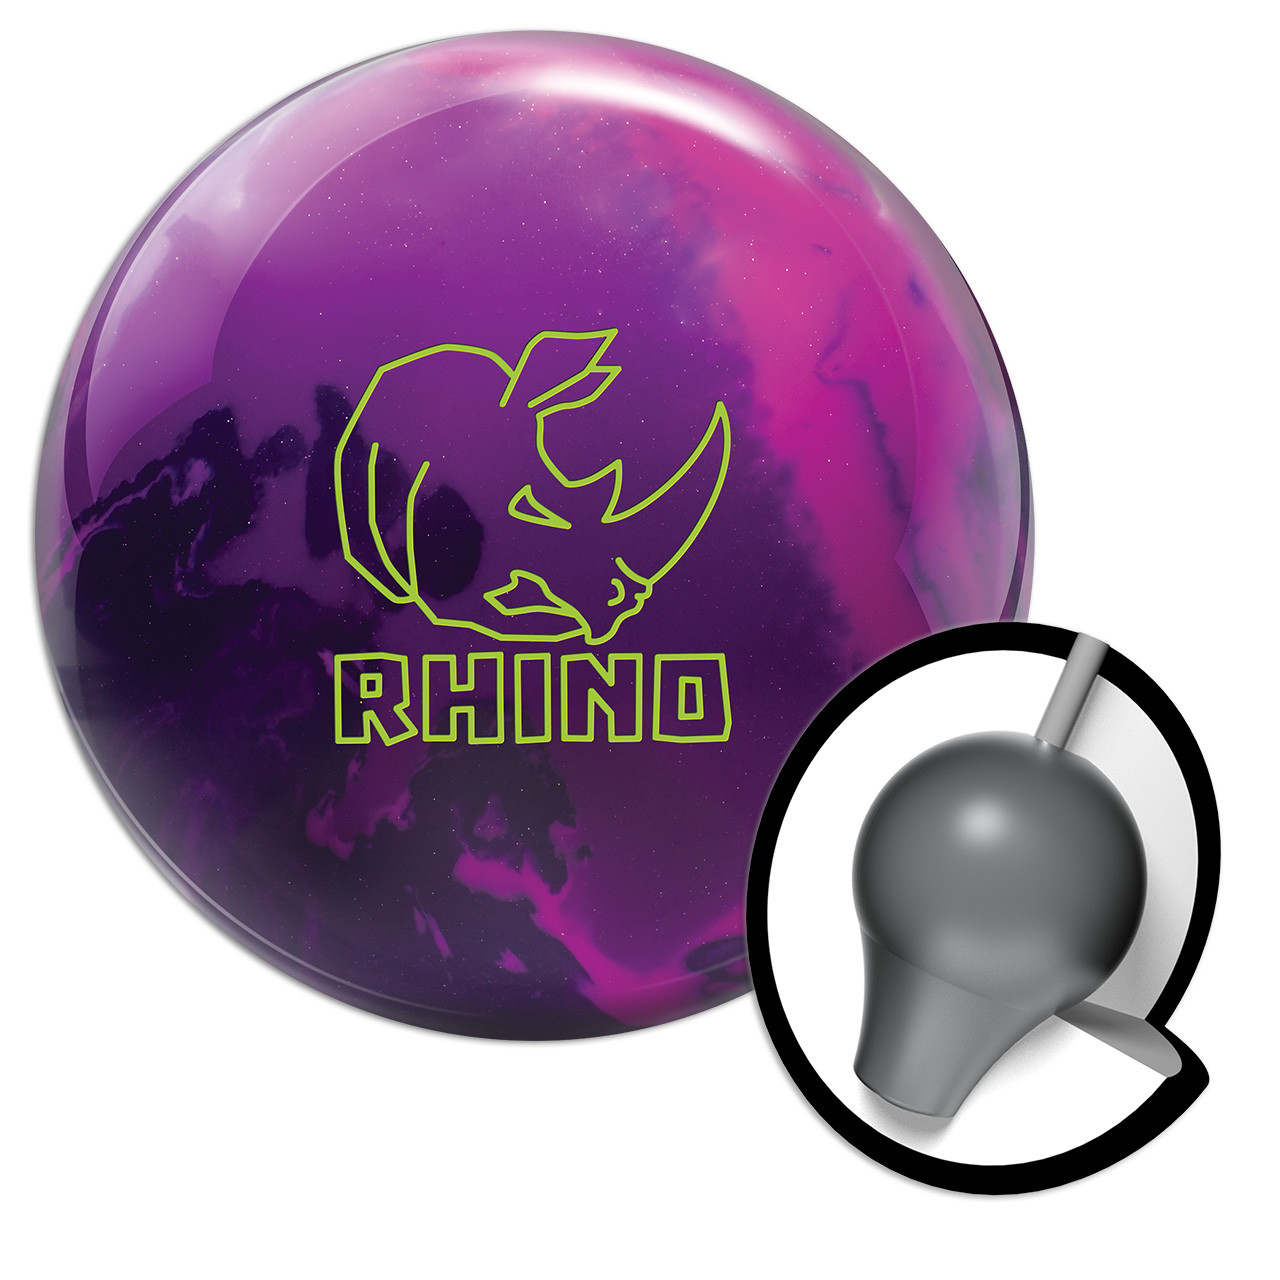 Brunswick Bowling Products